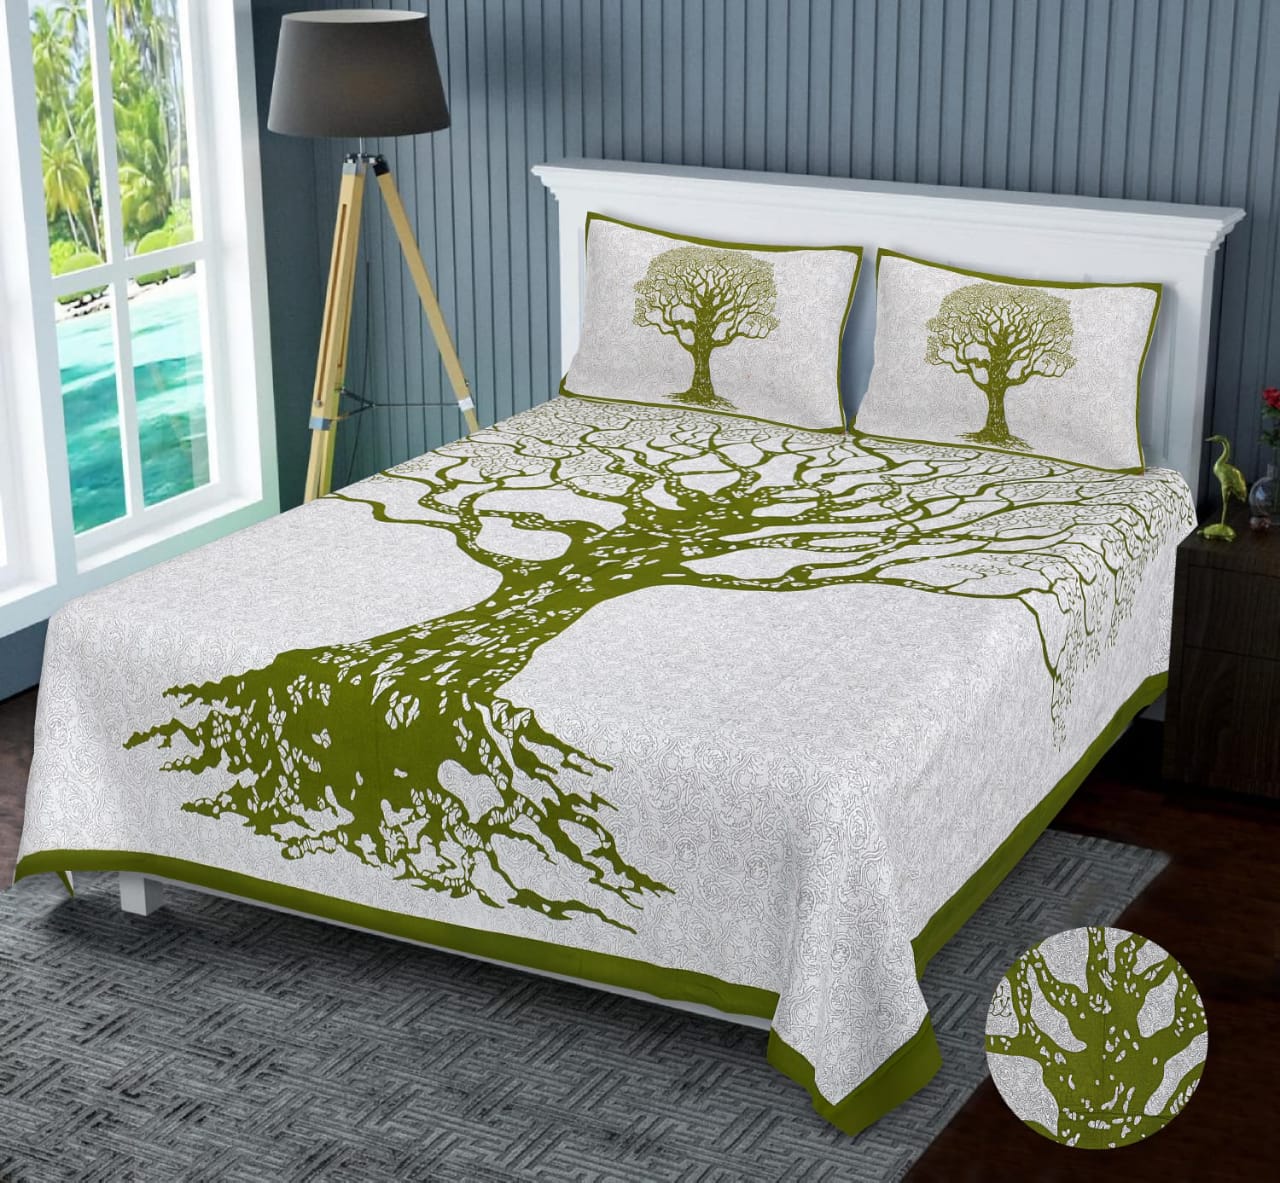 Premium Jaipuri Cotton Print King-Size Bed Sheet Set